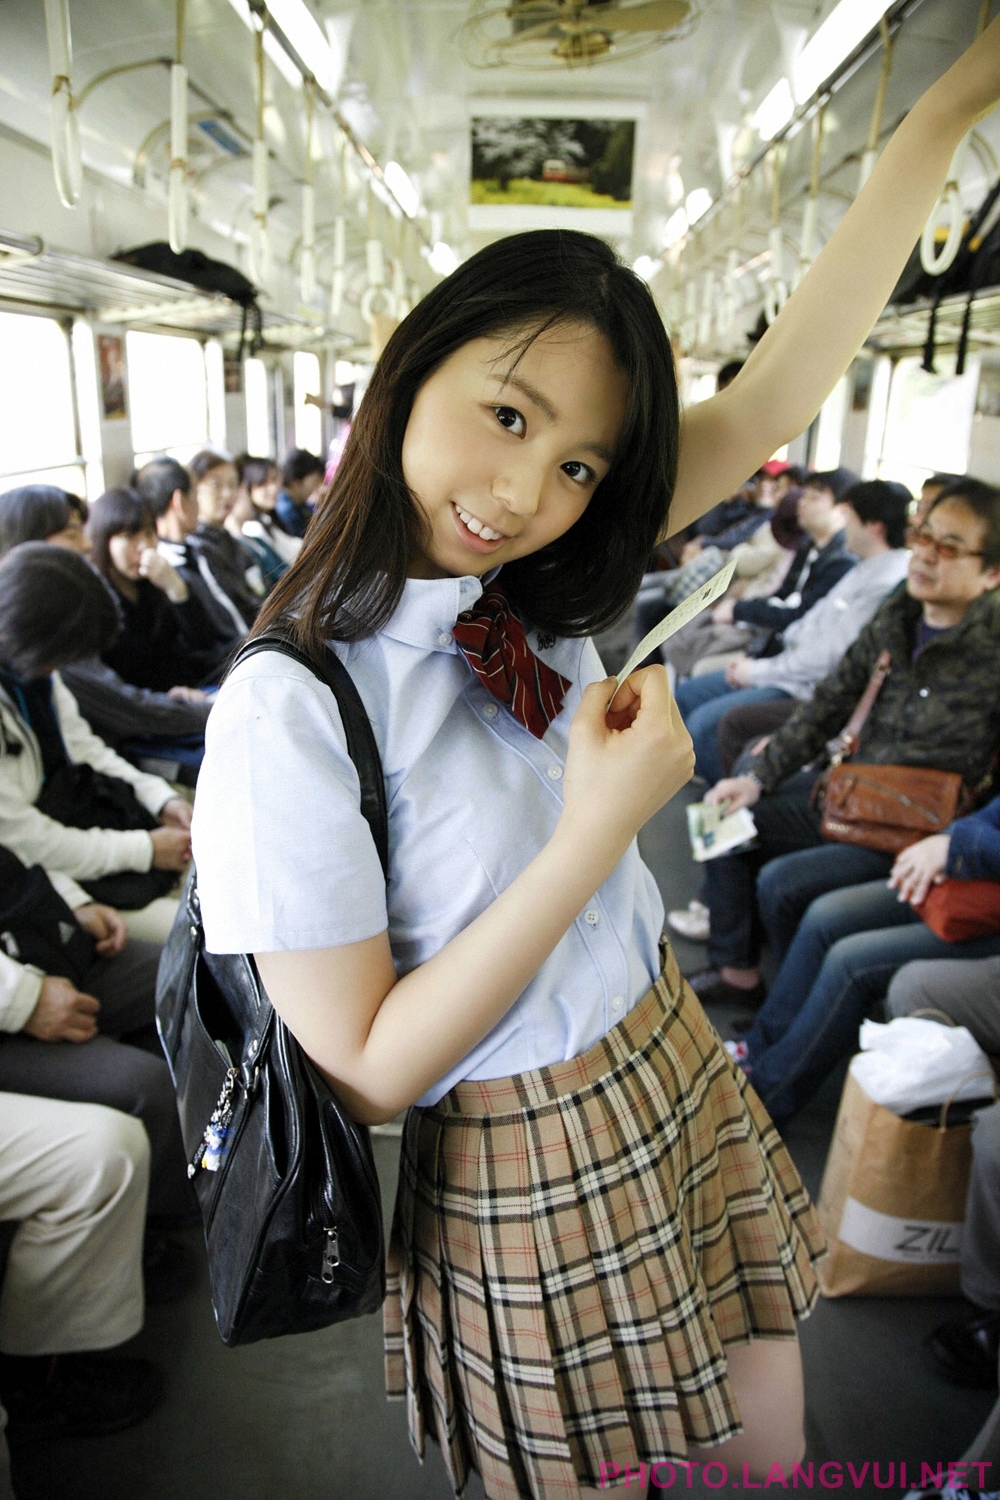 Зрелые японки в автобусе. Японские девочки в транспорте. Японские девушки в автобусе. Азиатки в общественном транспорте.